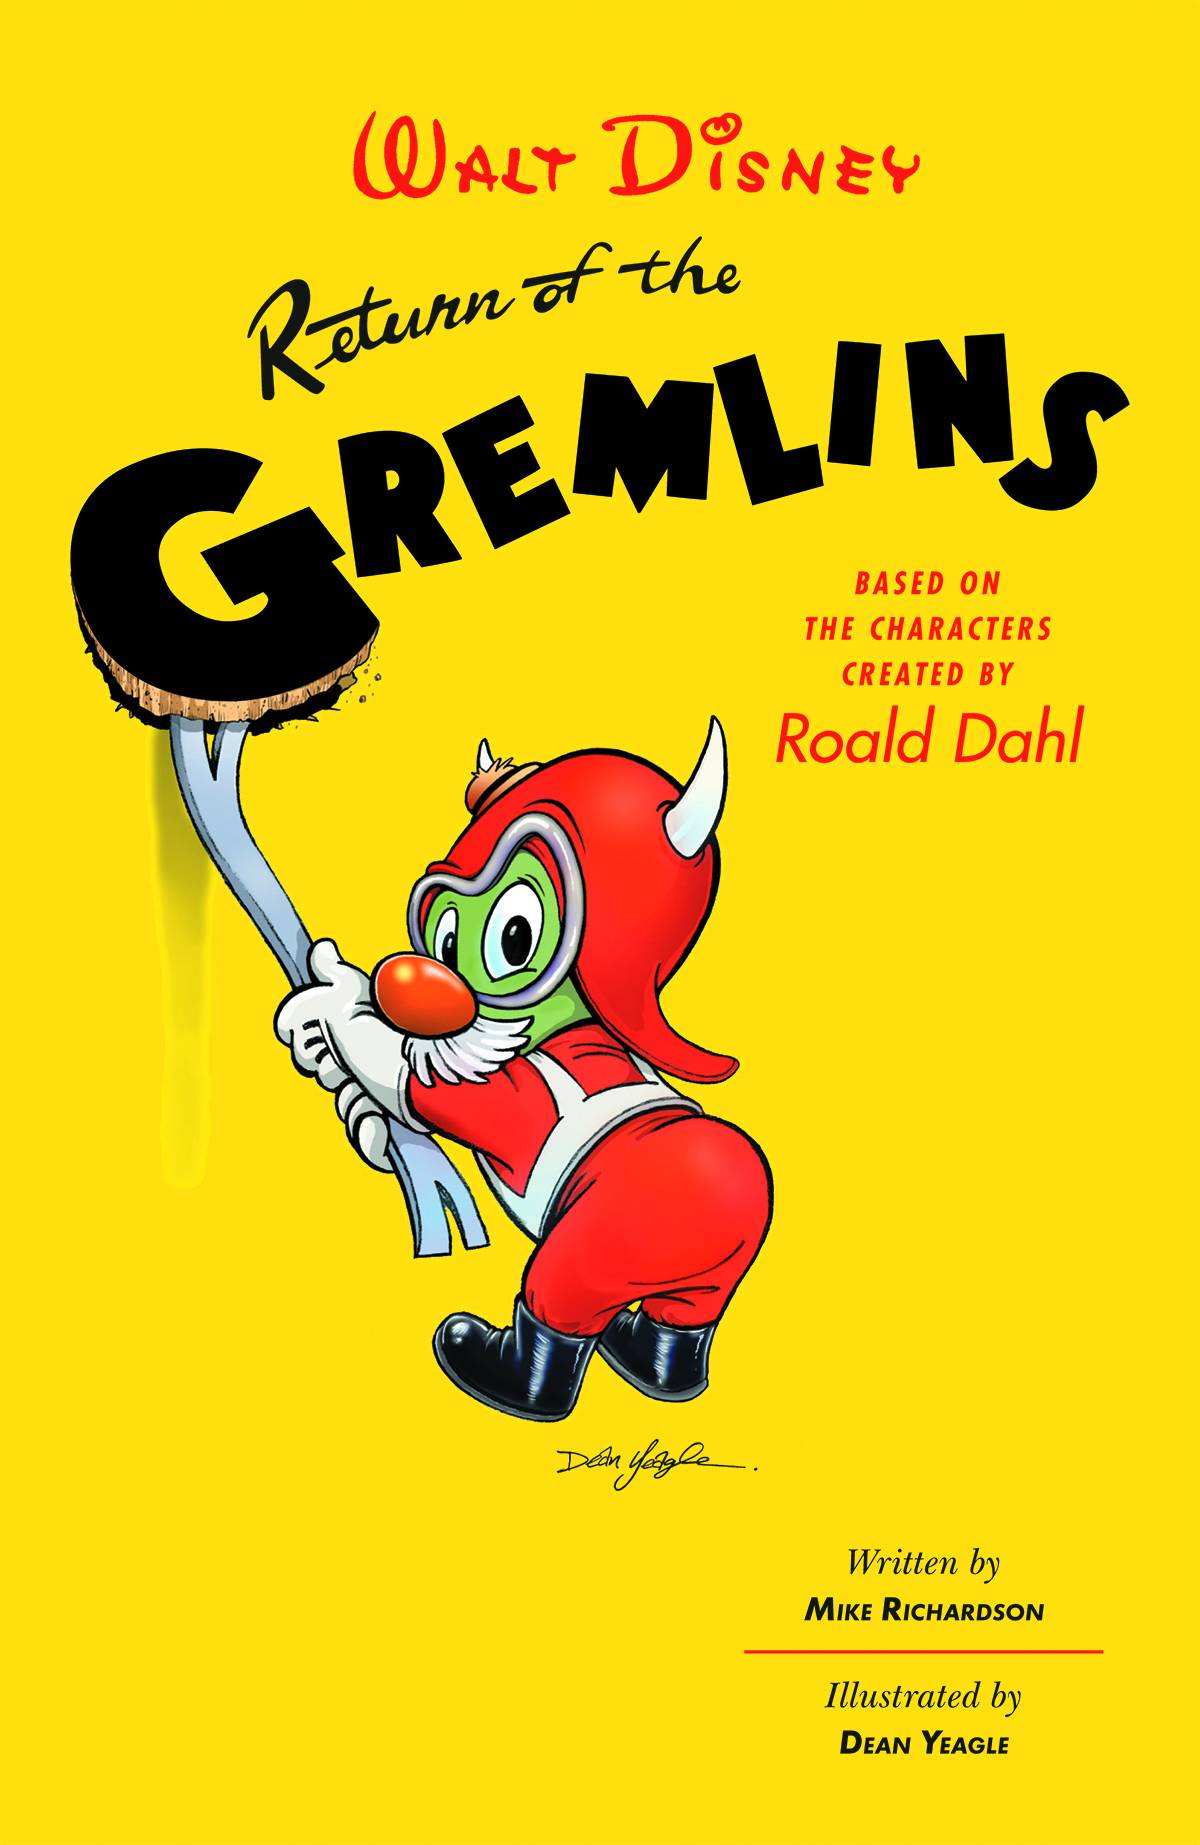 Return of the Gremlins Hardcover